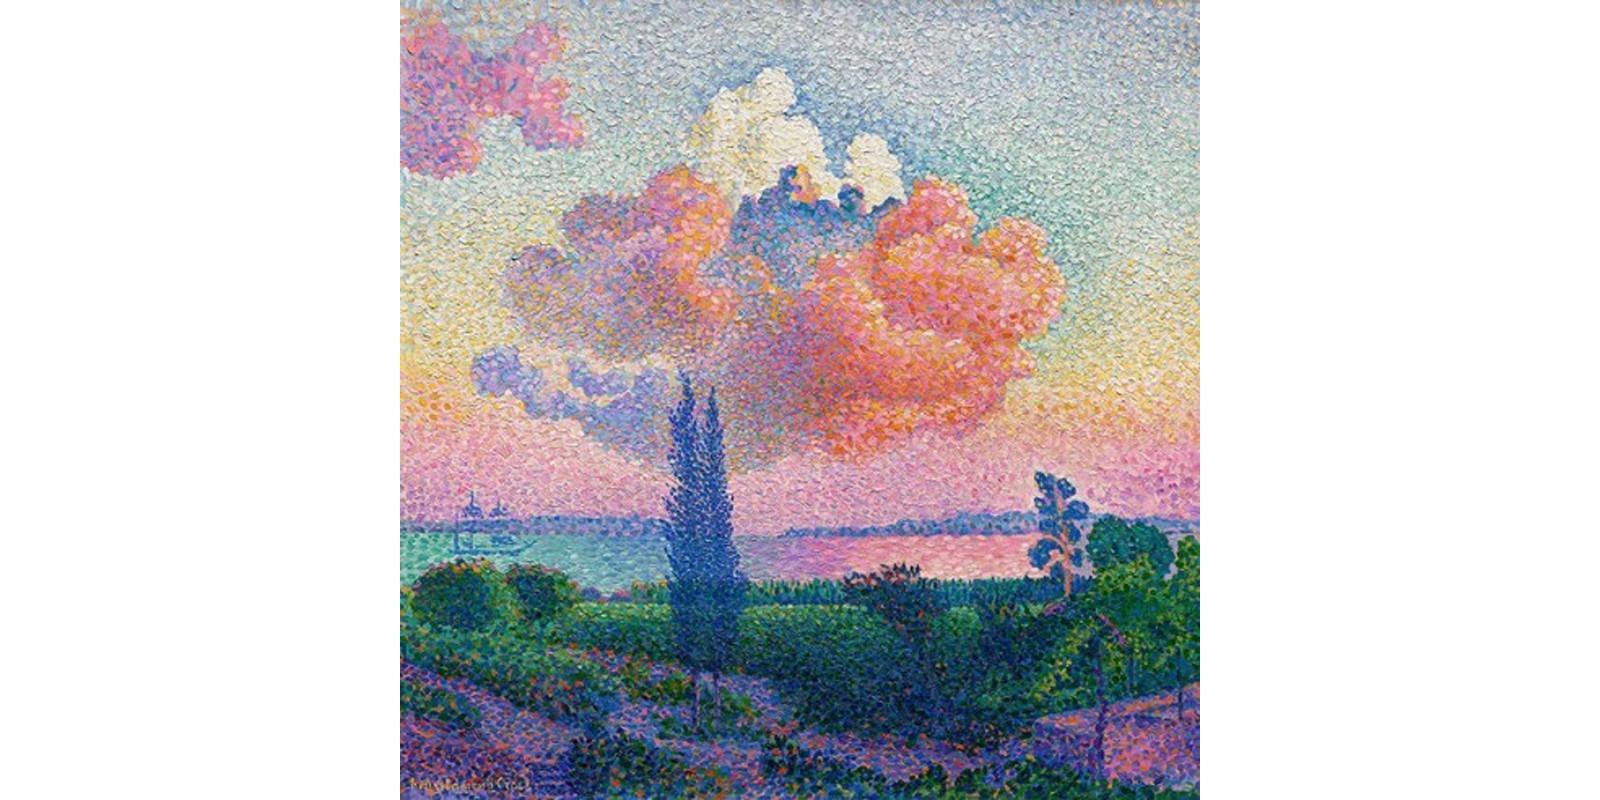 Henri Edmond Cross - The Pink Cloud